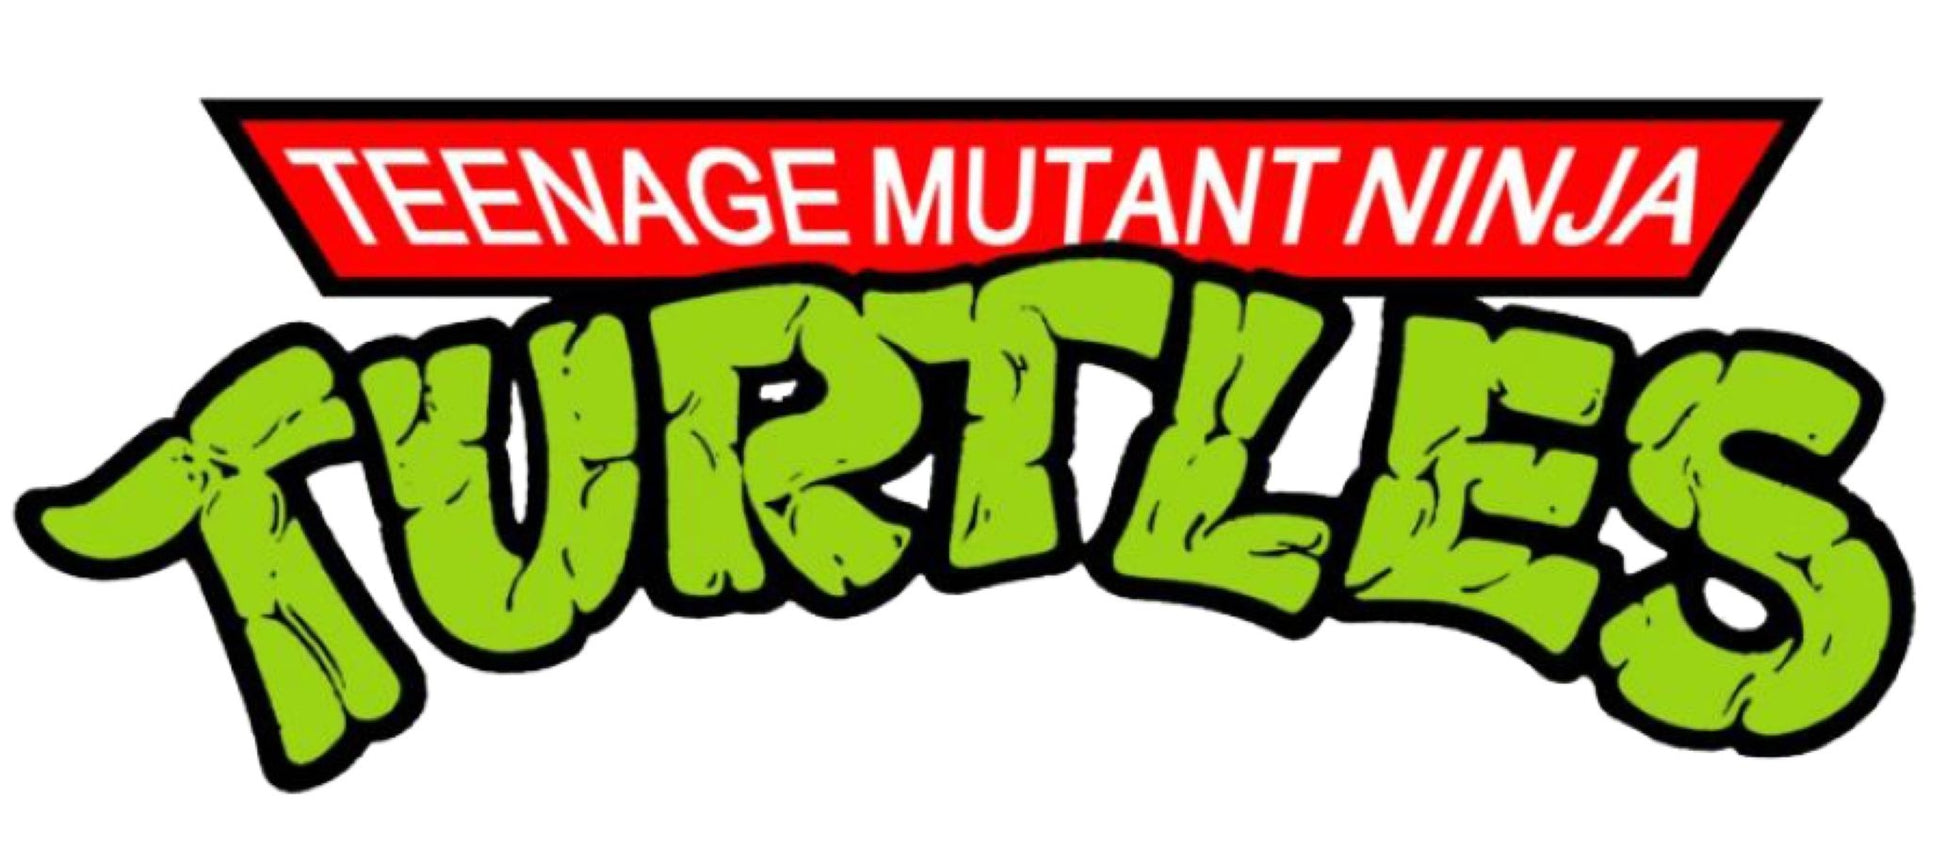 Teenage Mutant Ninja Turtles 2: Secret of the Ooze - Tokka Pop! Vinyl